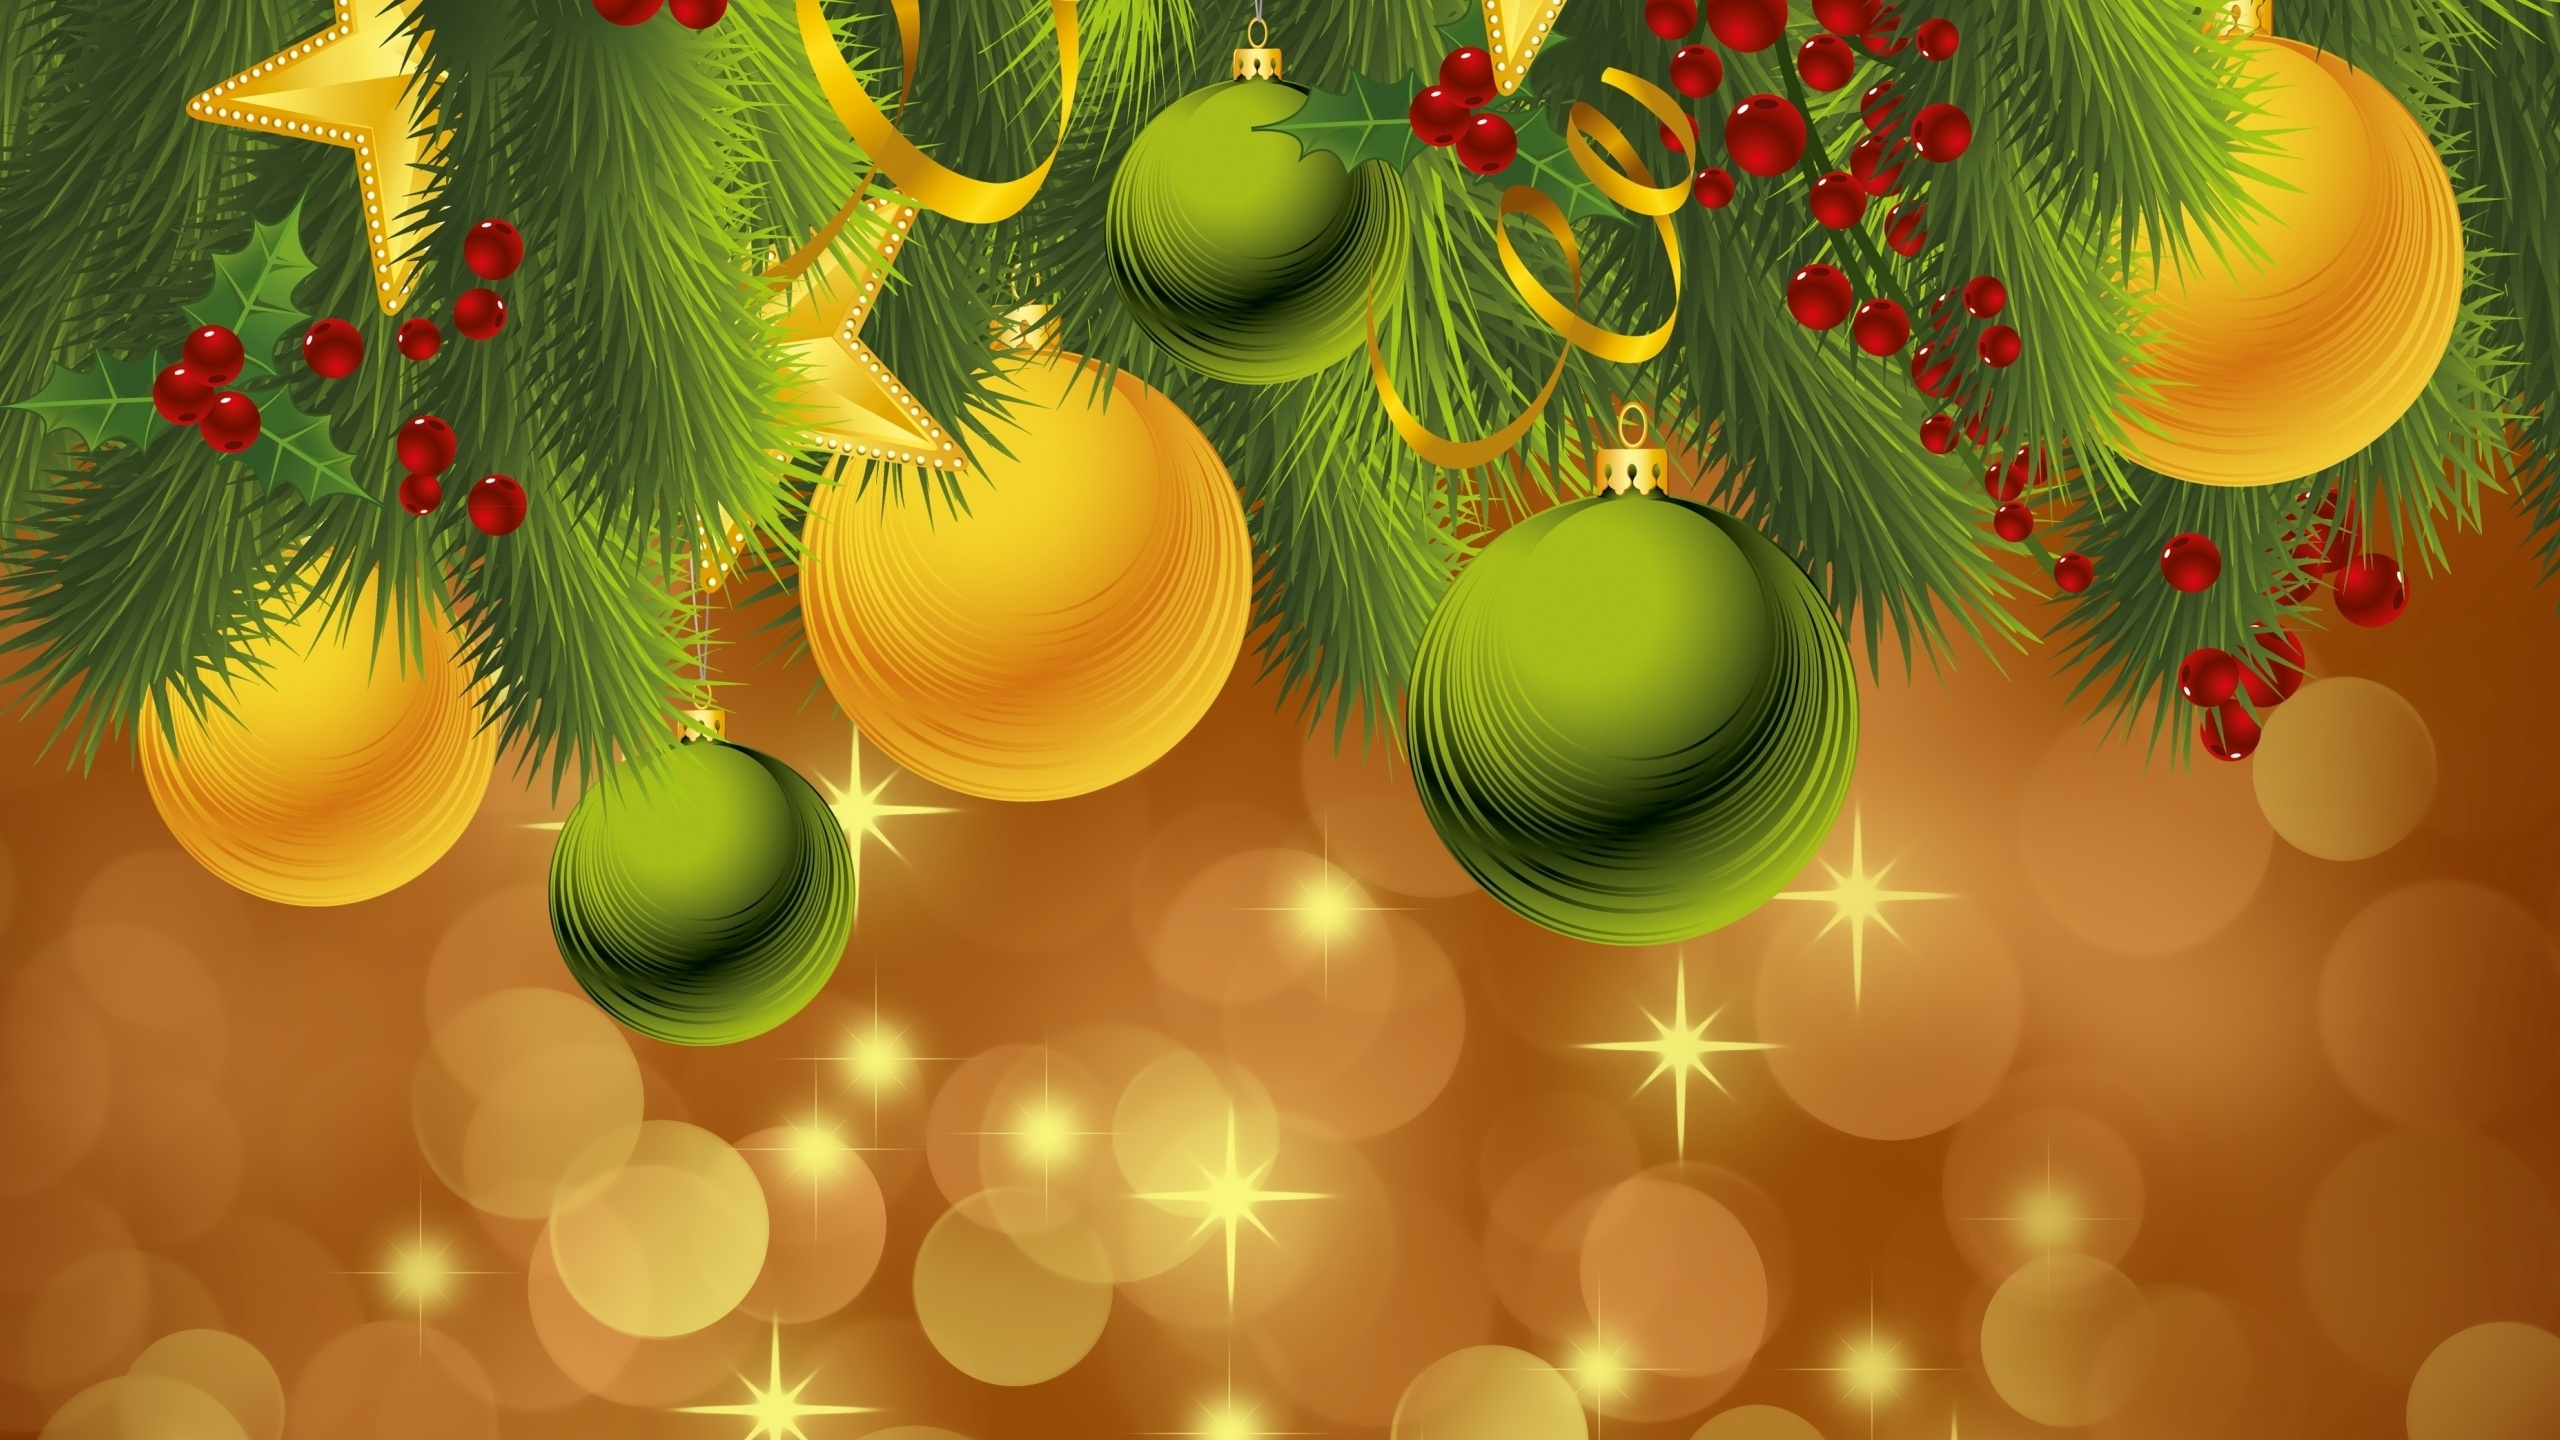 Weihnachten, Neujahr, Christmas Ornament, Gr, Baum. Wallpaper in 2560x1440 Resolution